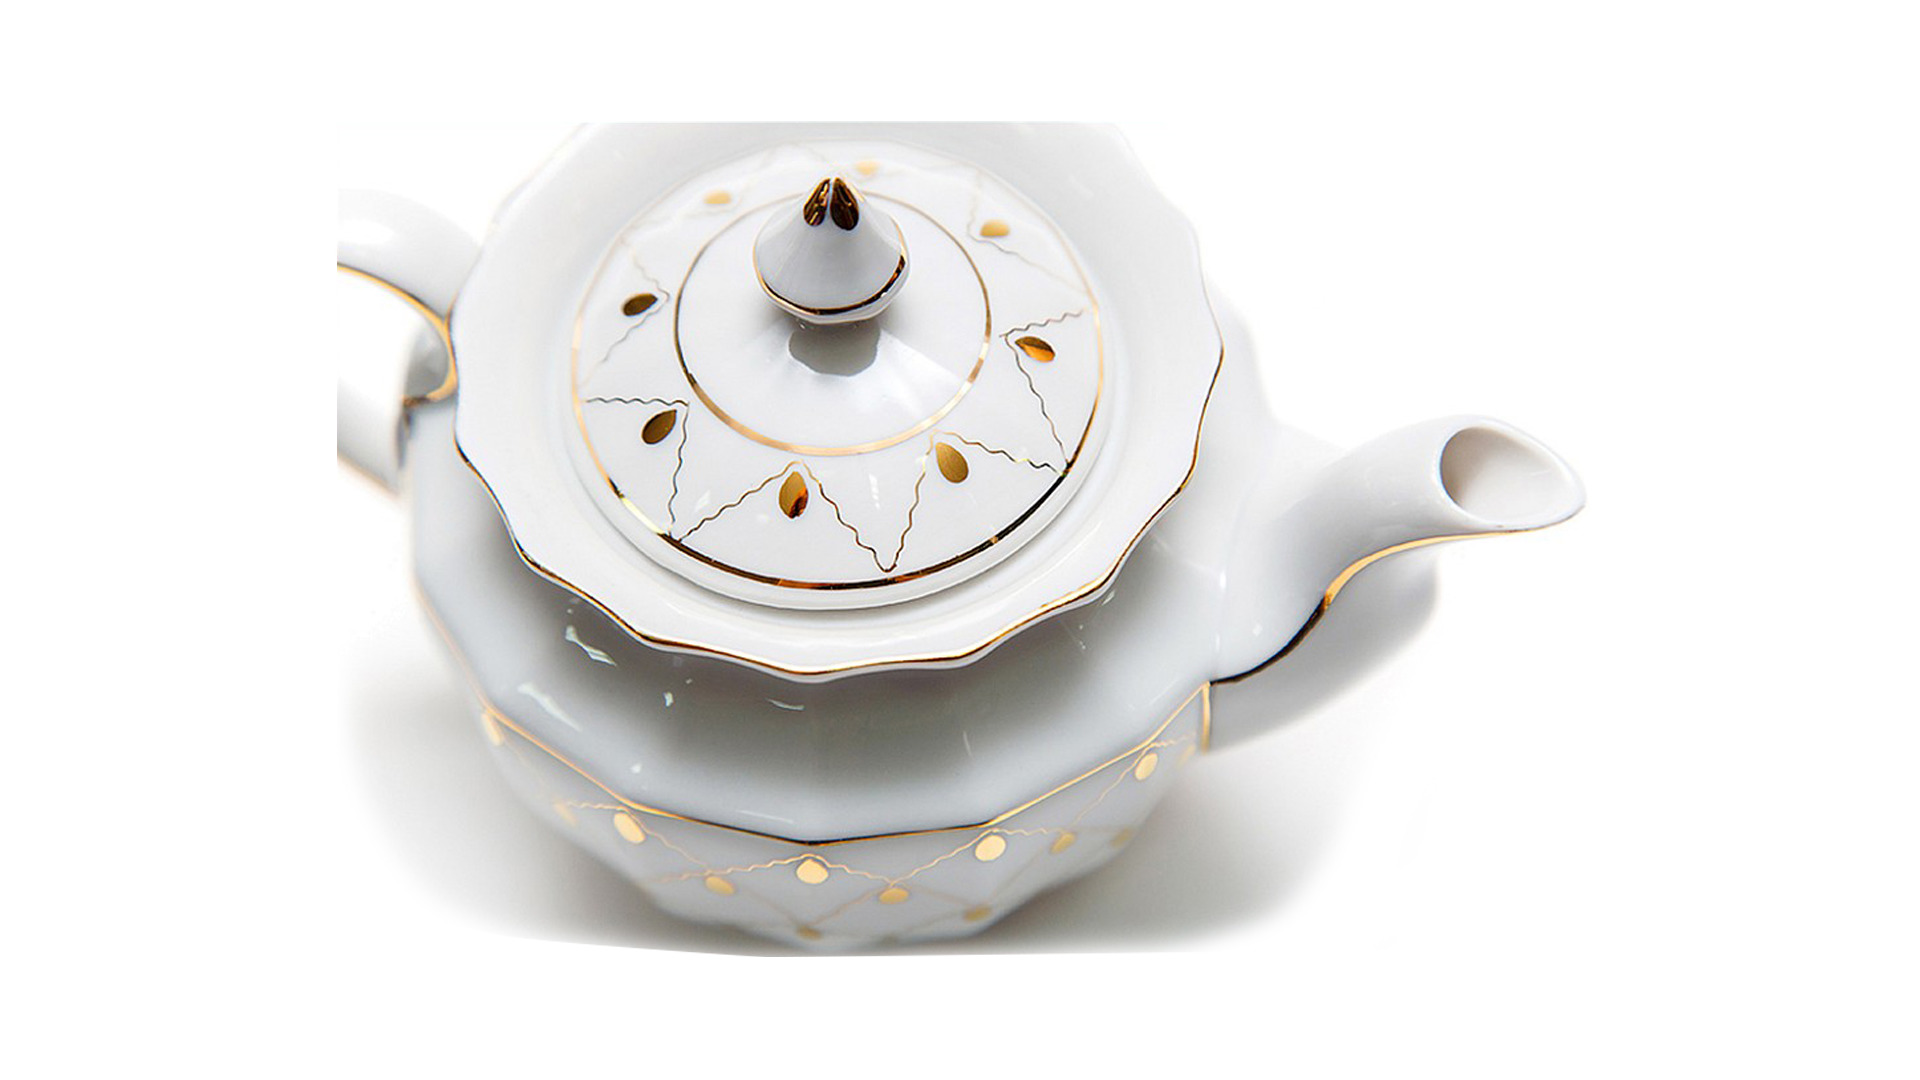 Сервиз чайный Франц Гарднер в Вербилках Золотая вуаль на 6 персон 15 предметов, фарфор твердый